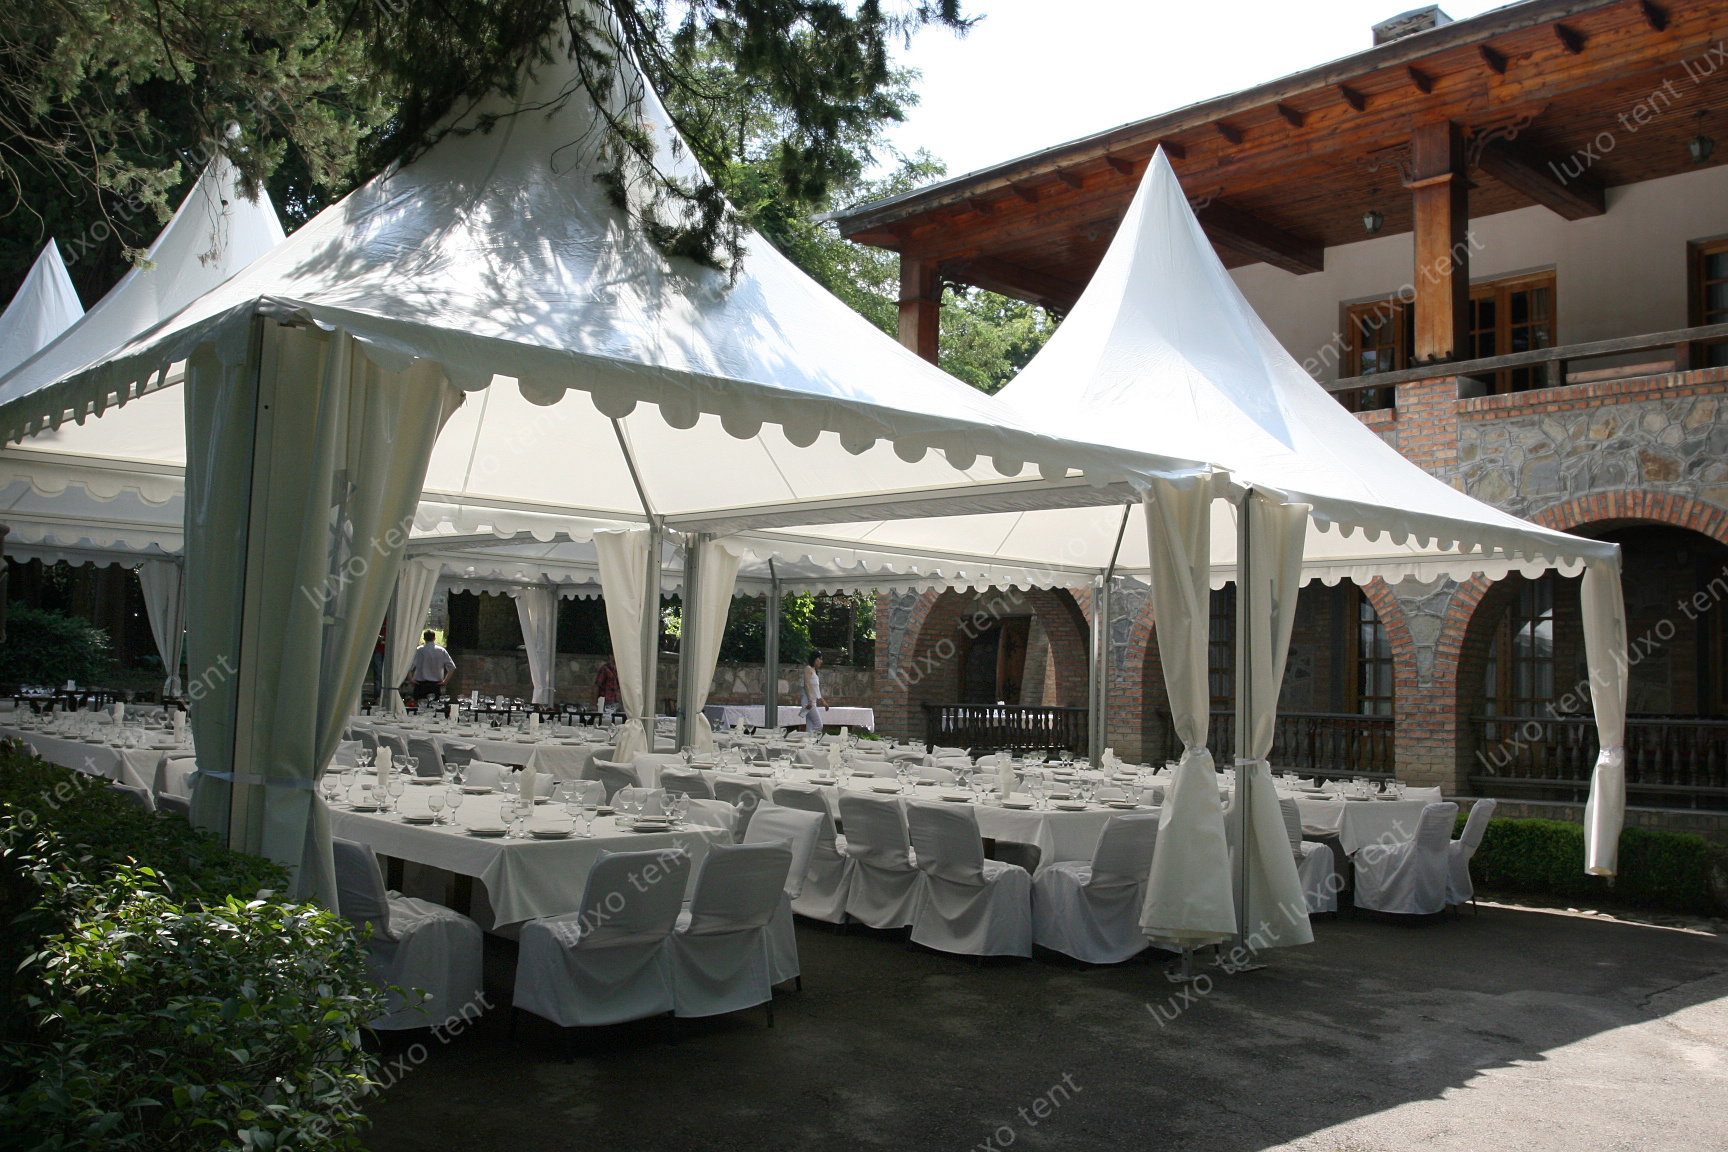 aluminiumsramme pvc baldakin pagode telt begivenhed fest bryllup telt